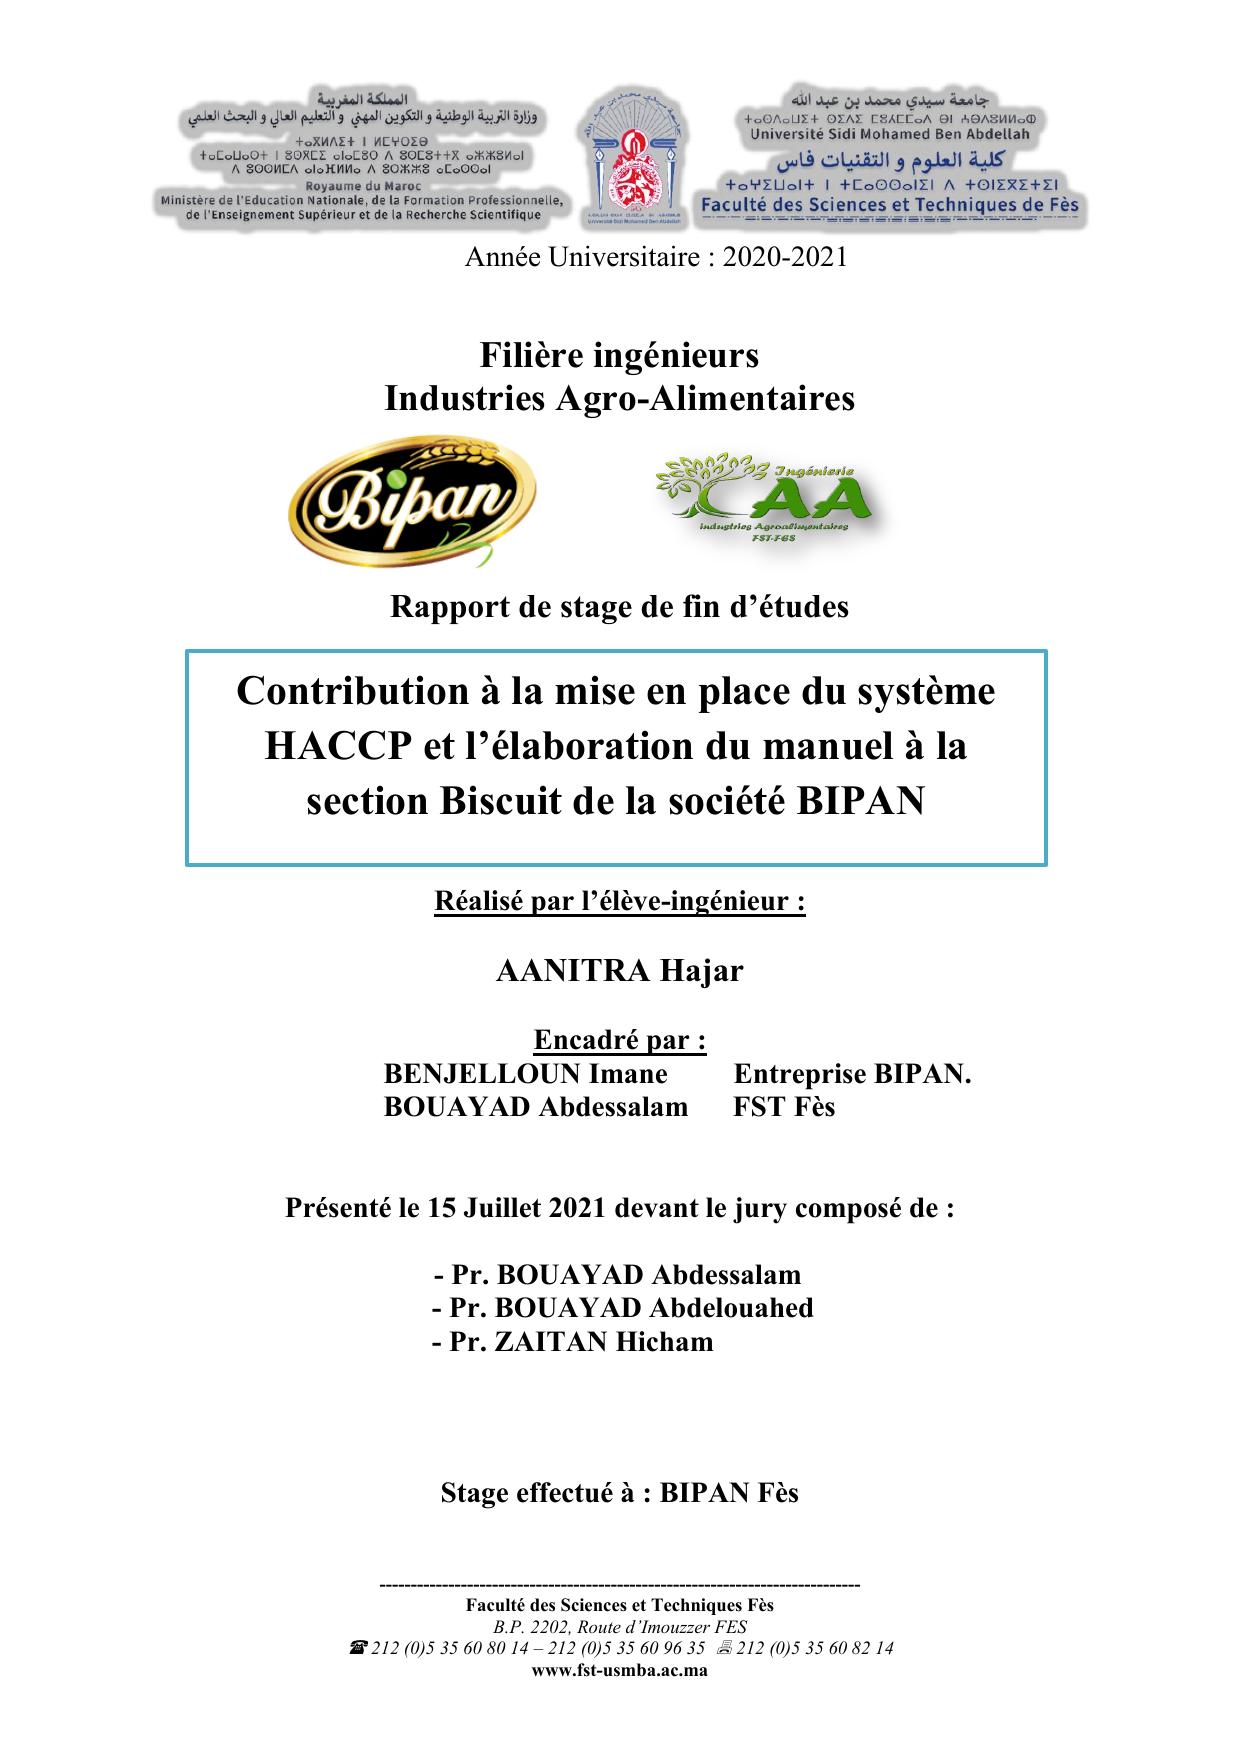 Contribution à la mise en place du système HACCP et l’élaboration du manuel à la section Biscuit de la société BIPAN